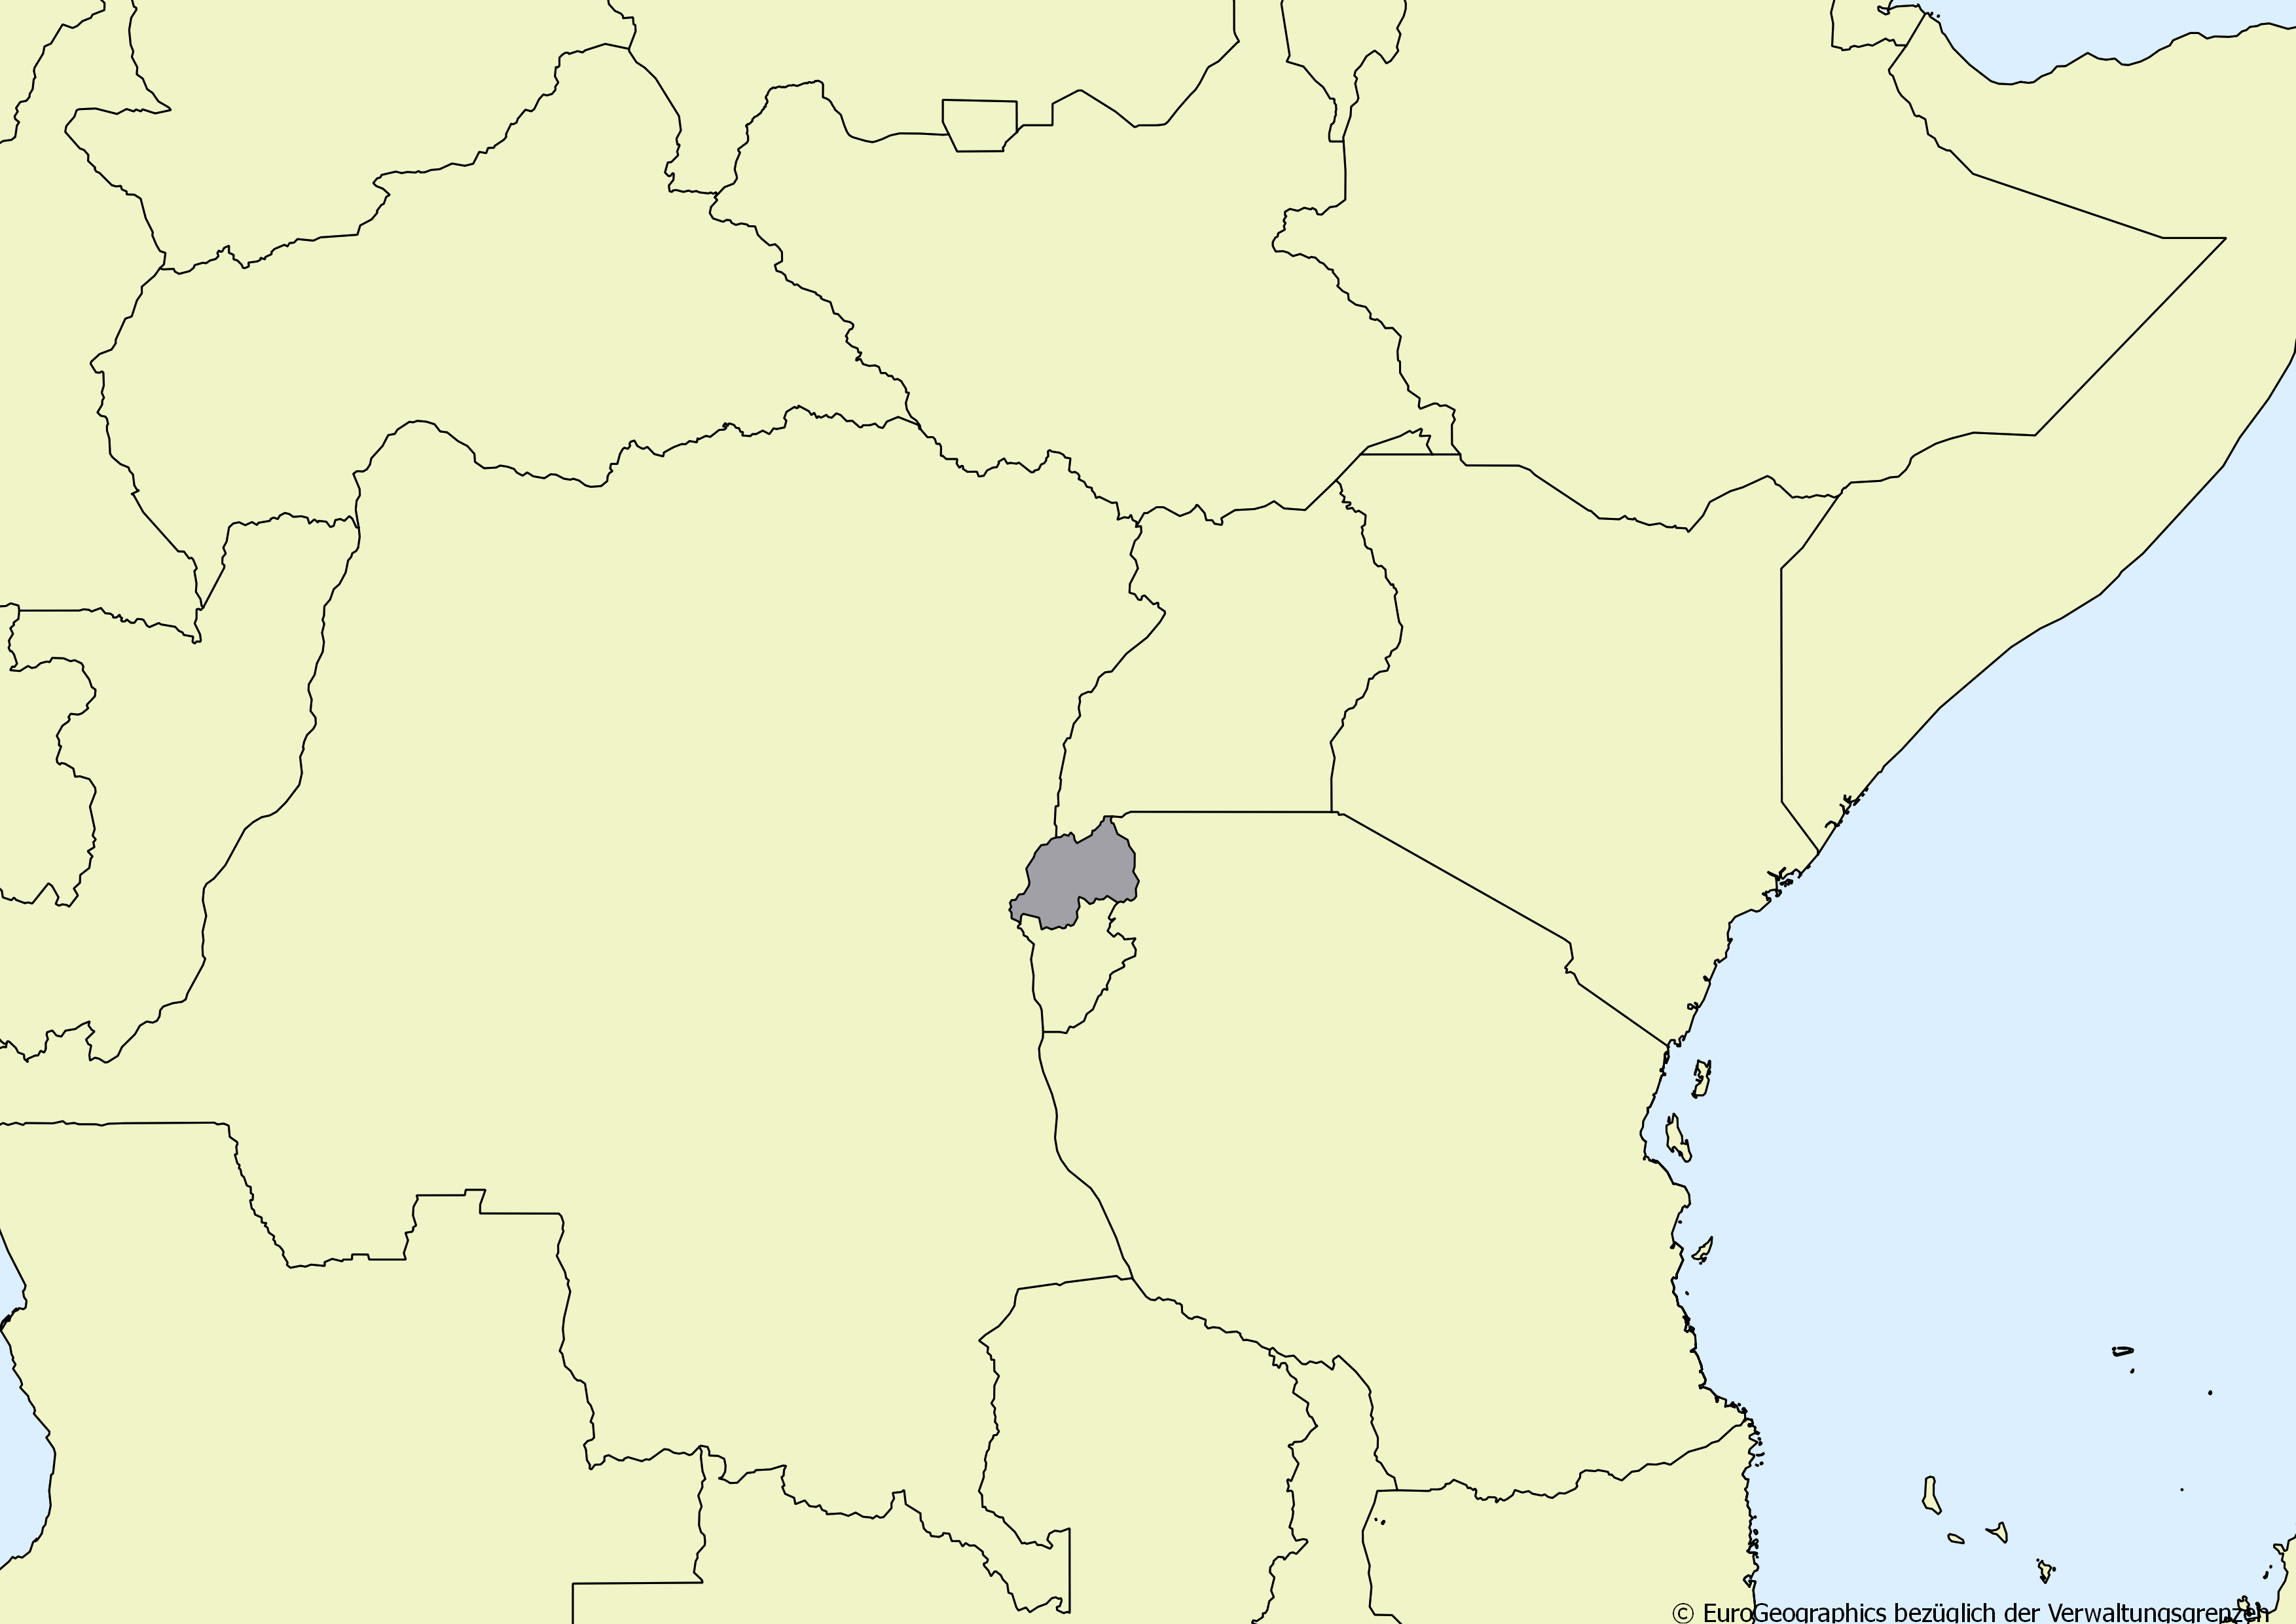 Ausschnitt einer Karte des afrikanischen Kontinents mit Ländergrenzen. Im Zentrum steht Ruanda grau hervorgehoben